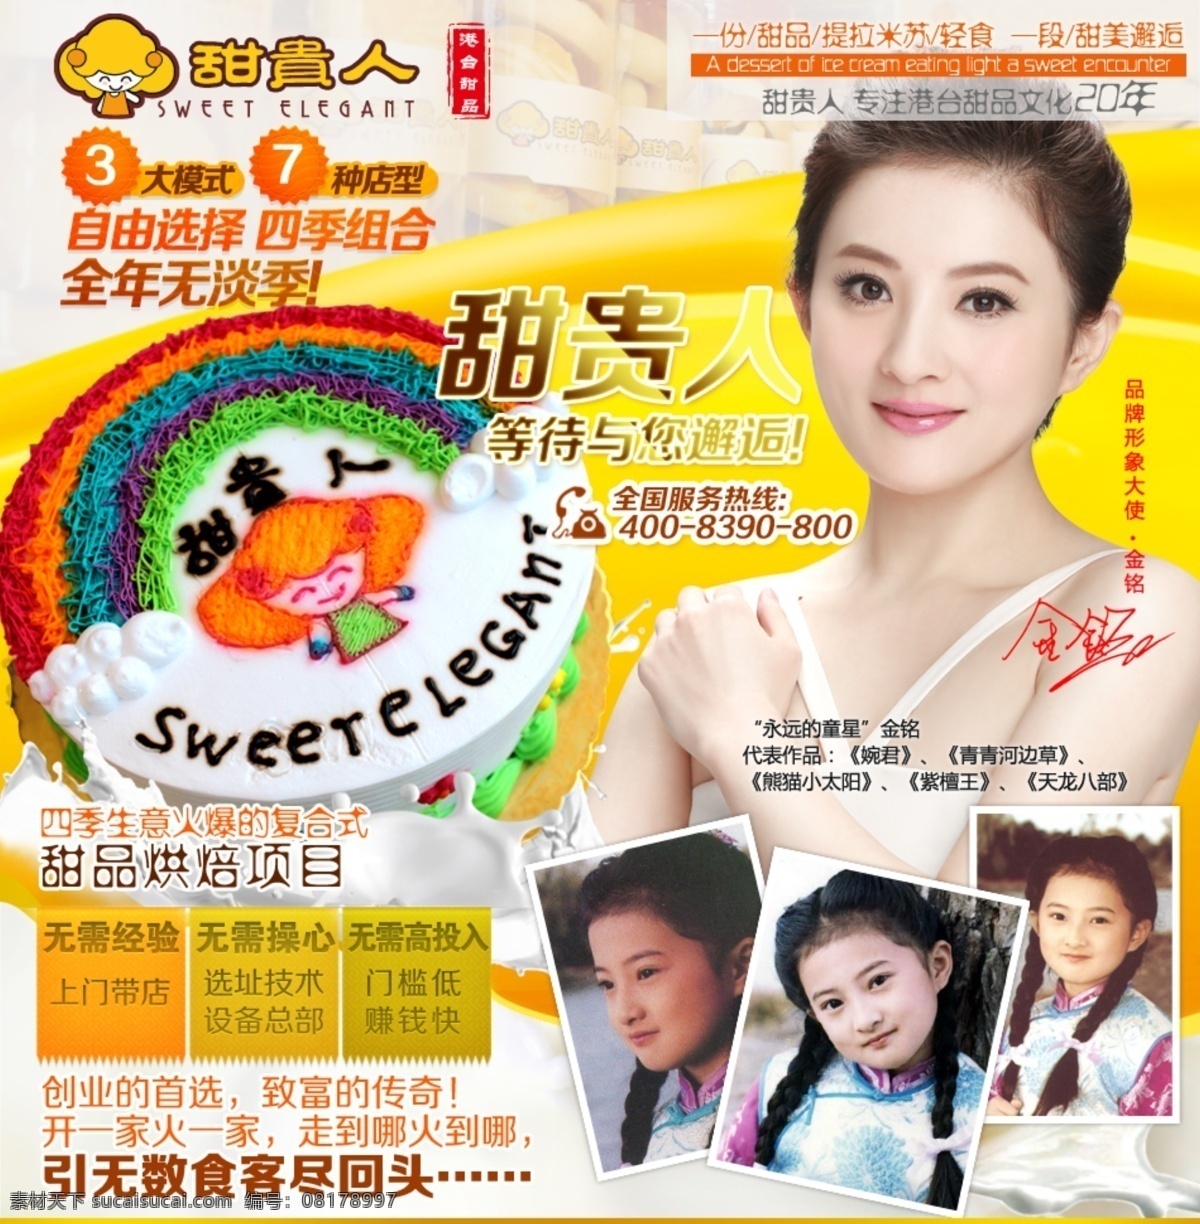 台湾 奶油 彩虹 蛋糕 海报 彩虹蛋糕 提拉米苏 甜品 促销 淘宝食品 明星 金铭 白色